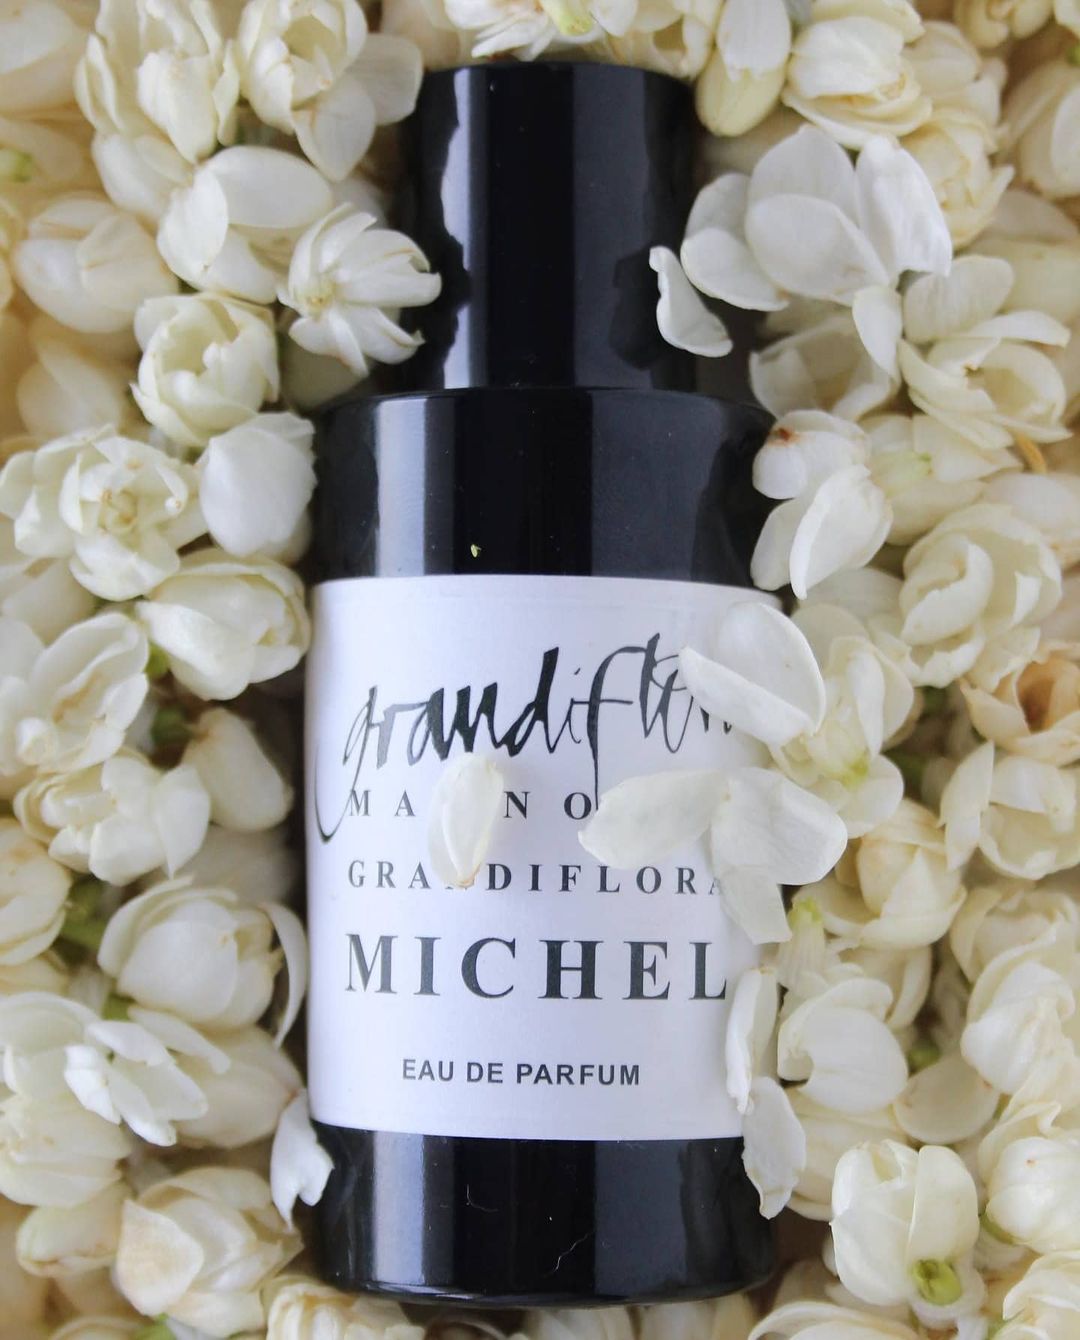 michel eau de parfum by grandiflora 